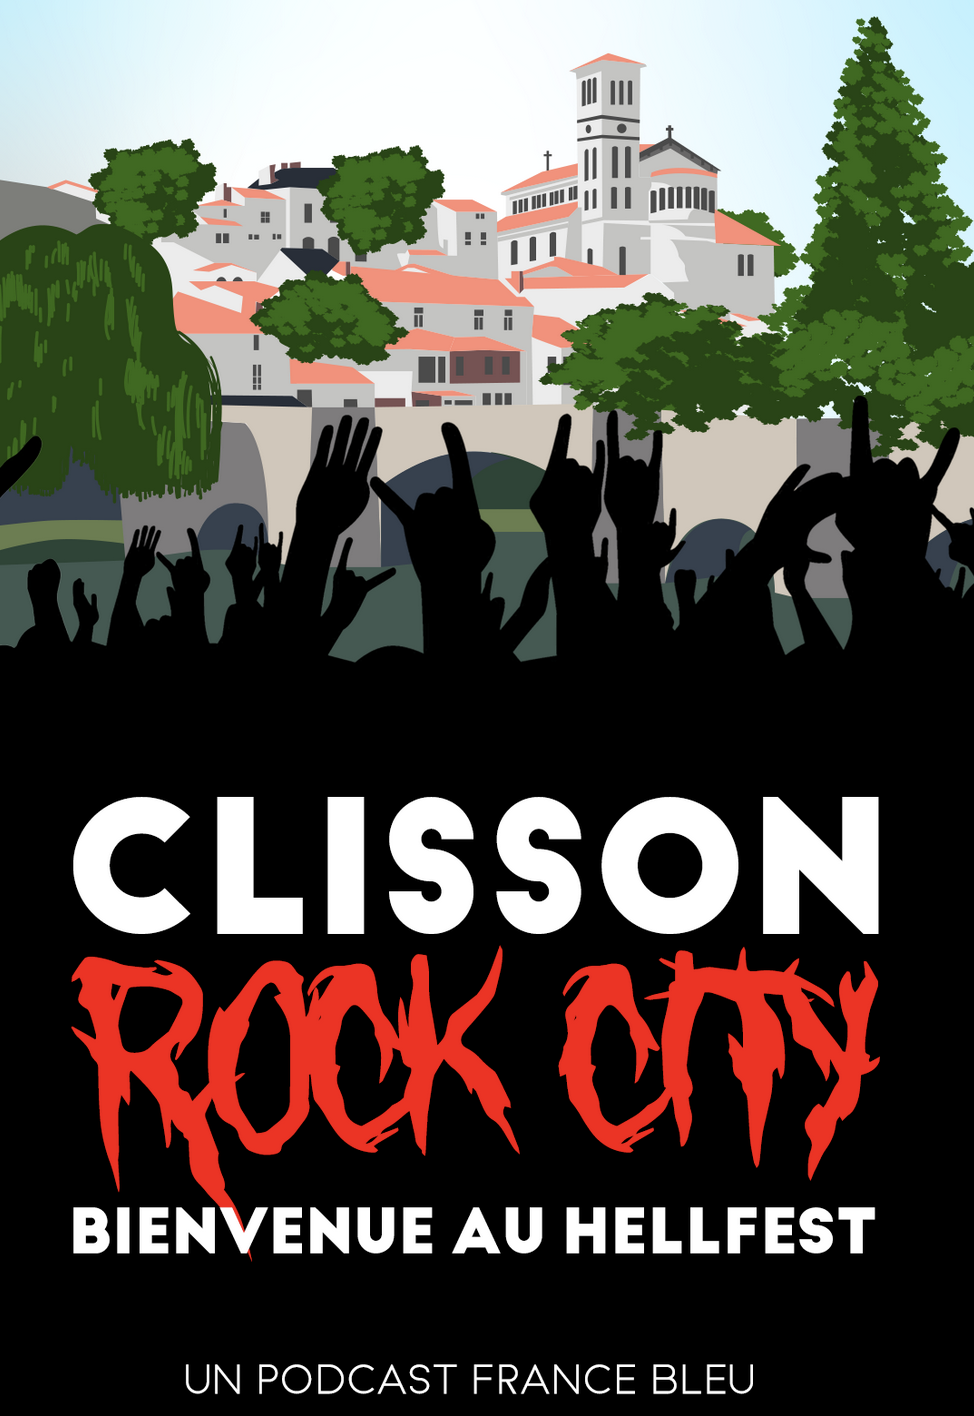 Podcast : France Bleu présente "Clisson Rock City"